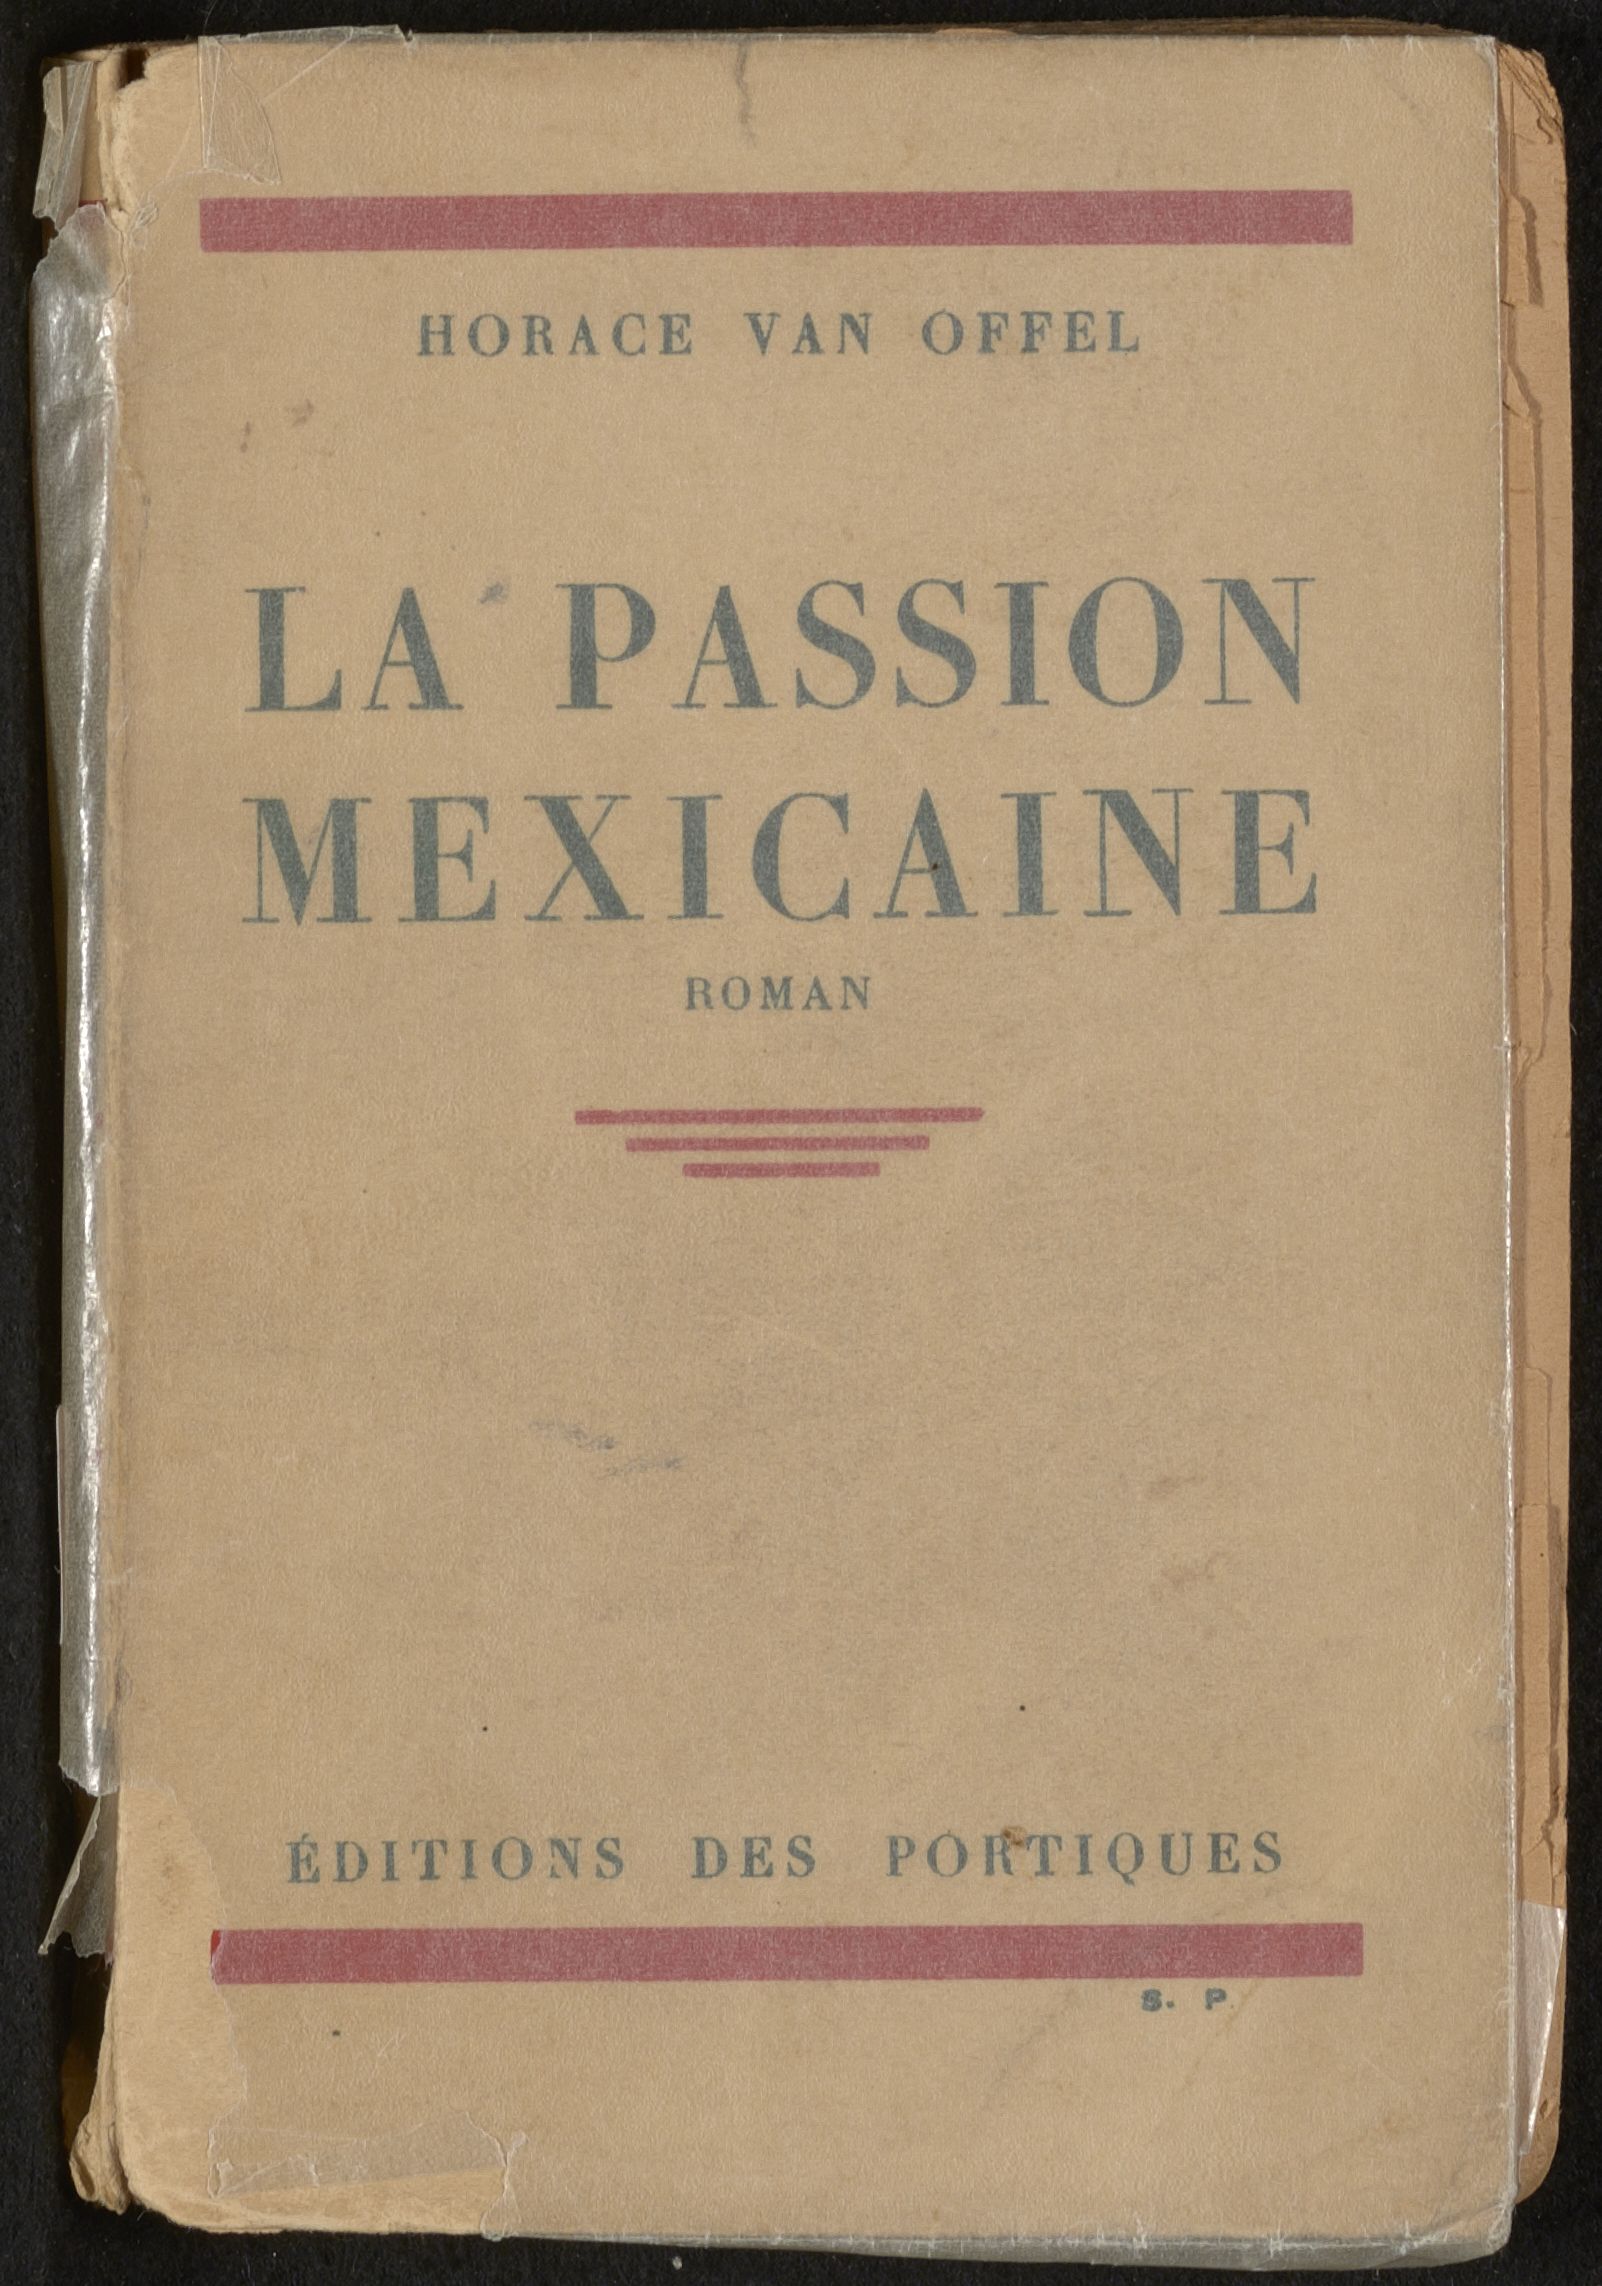 La Passion mexicaine